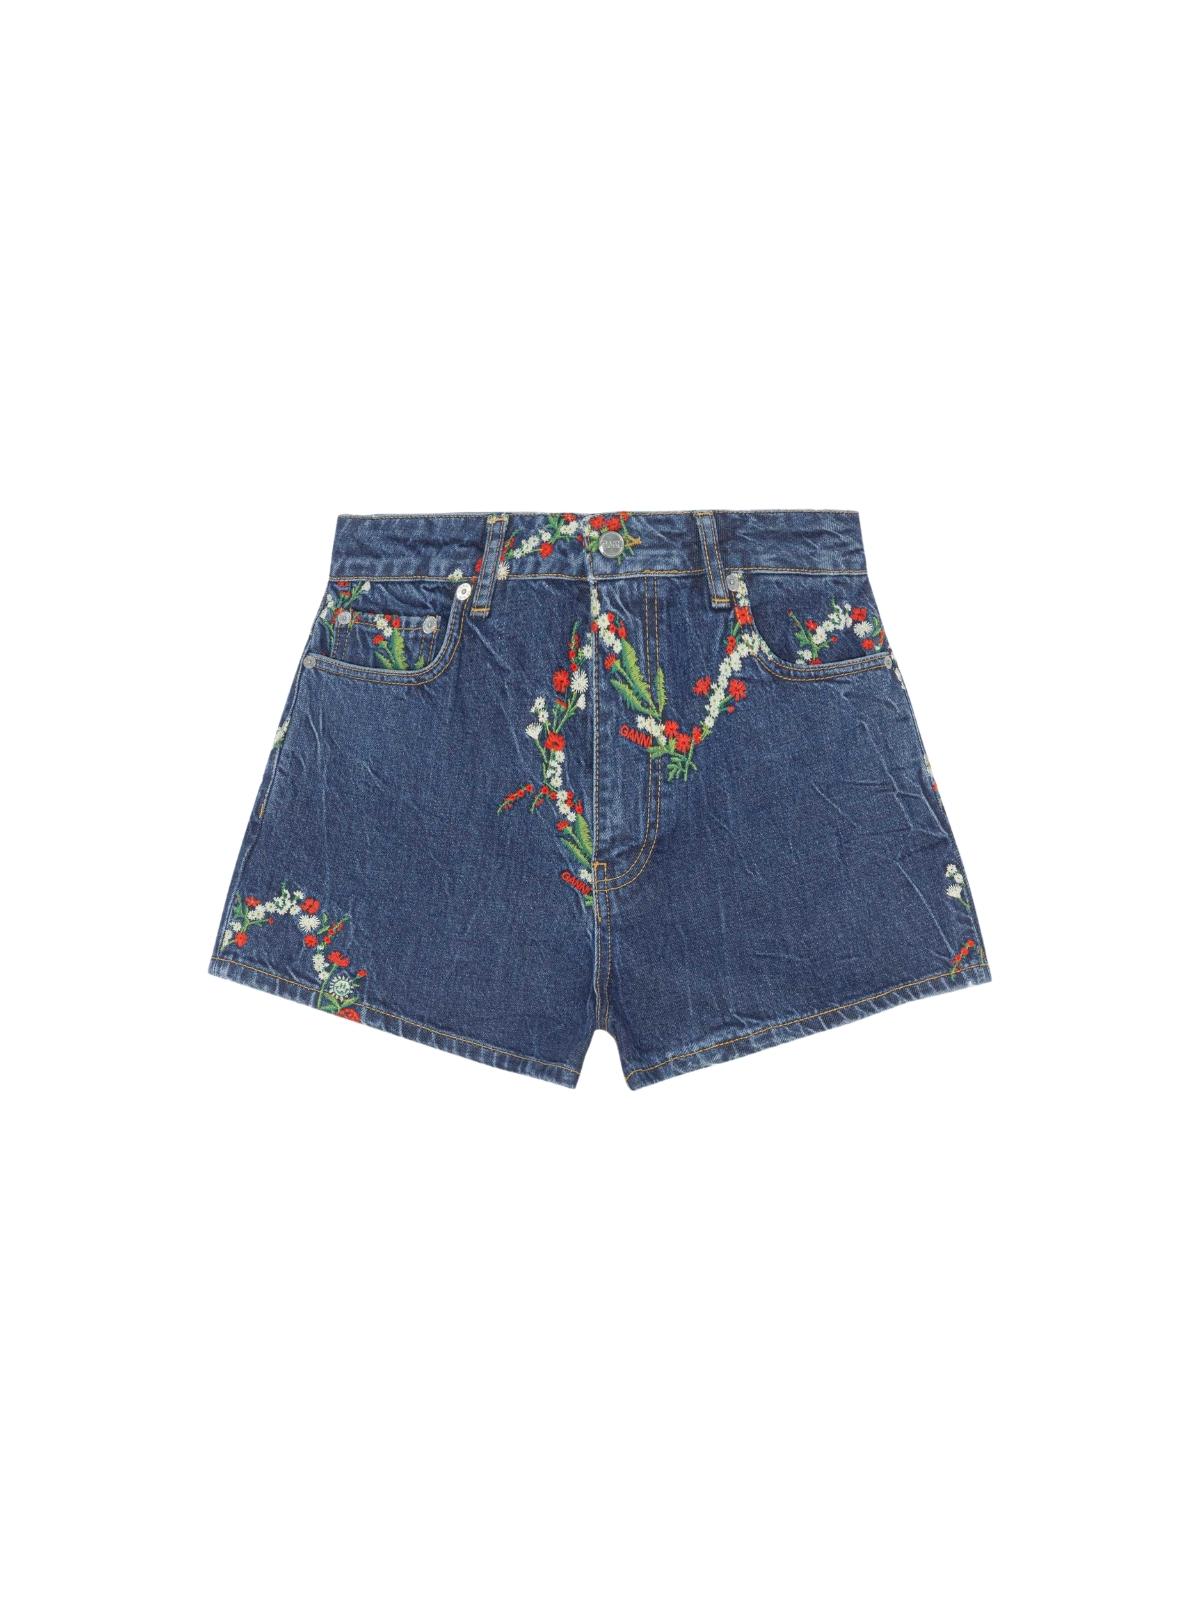 Ganni Embroidery Denim Shorts